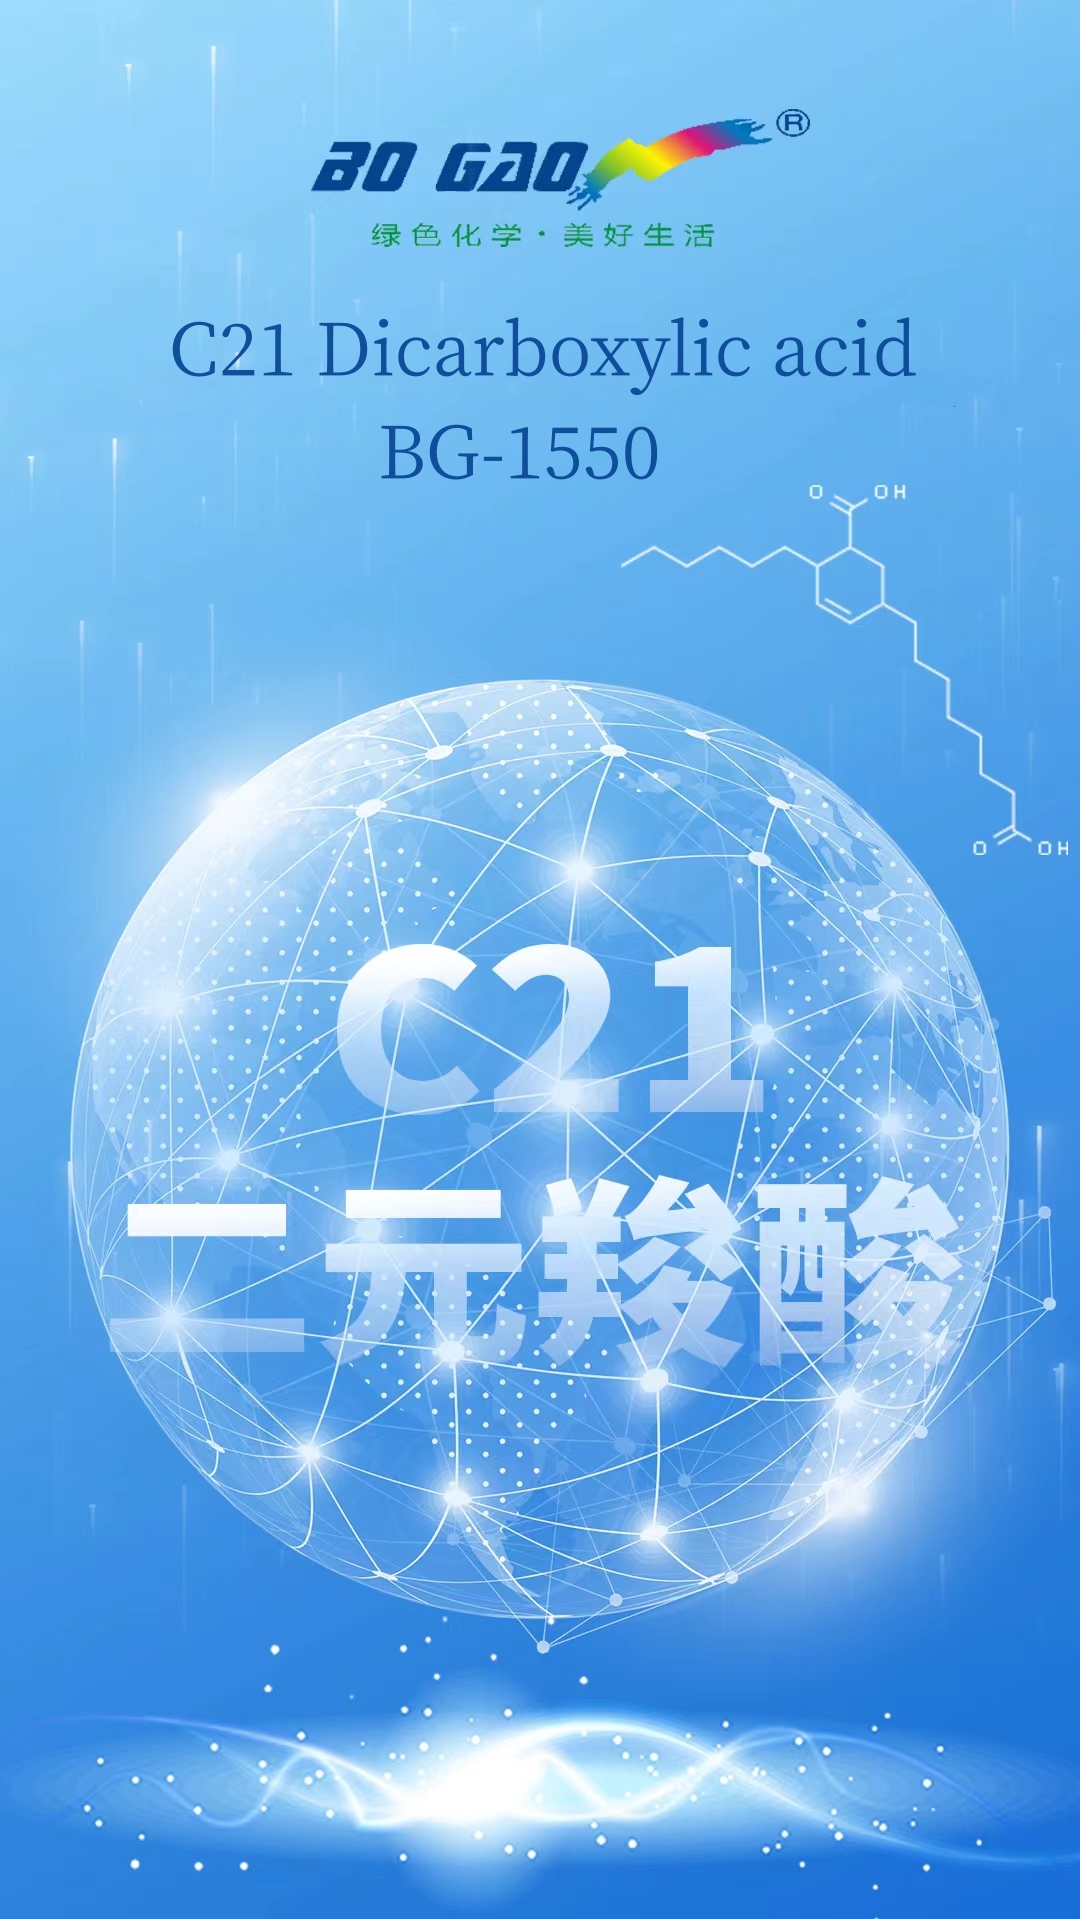 BoGao Lanĉas Multfunkcian Aplikon-C21 Dikarboksila acido/BG-1550